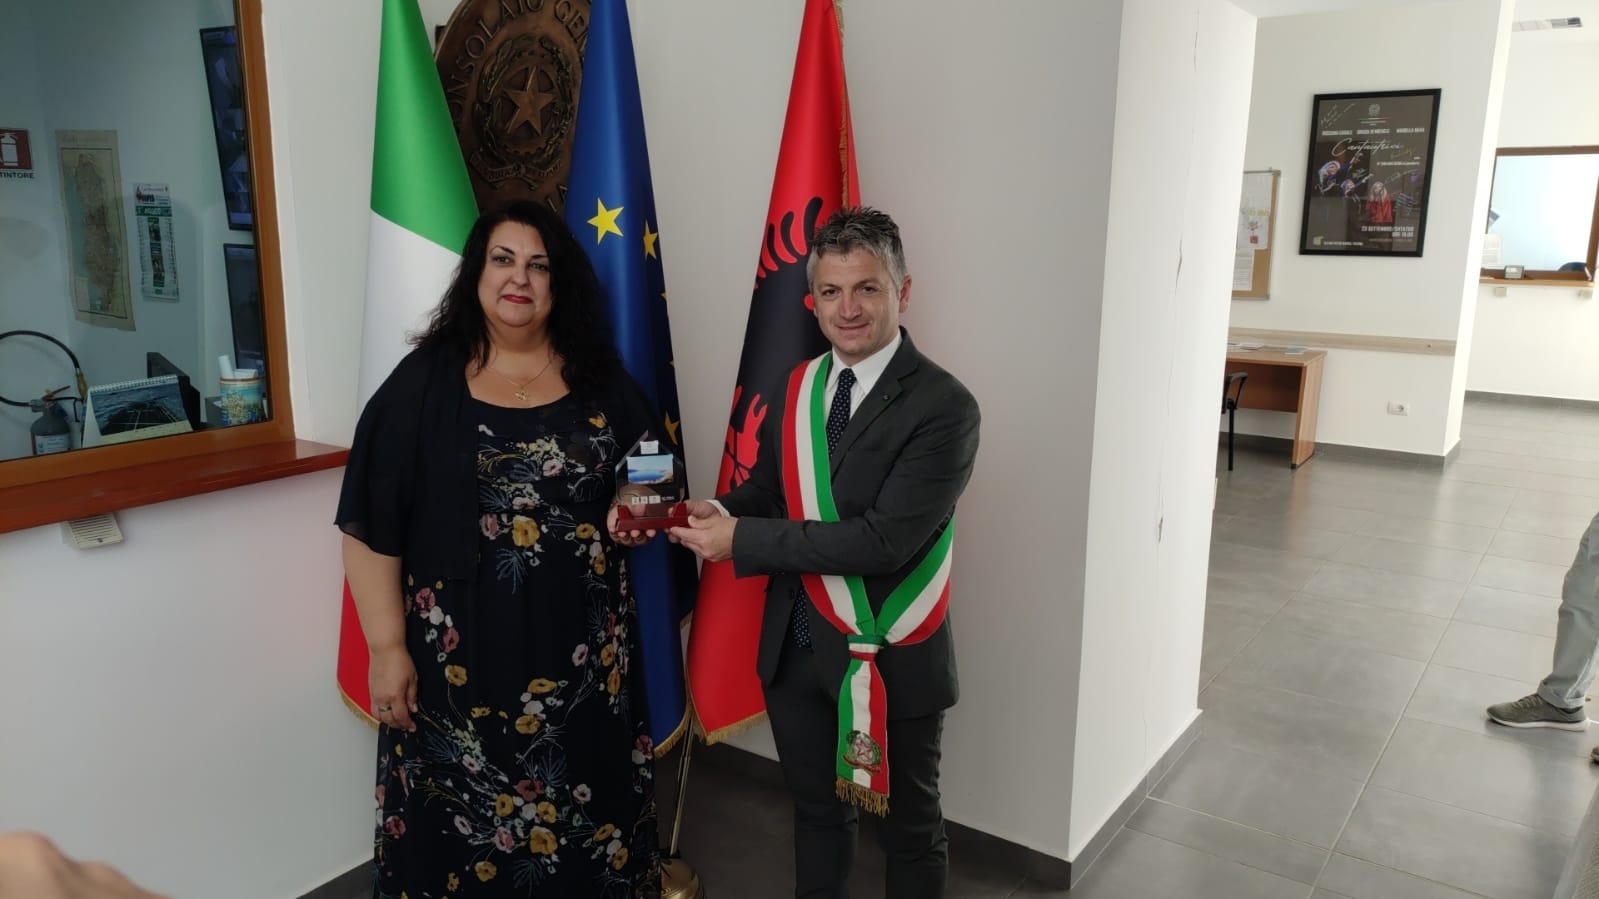 Salerno: Provincia, settimana dell’Italia in Albania, consigliere Pasquale Sorrentino “Subito  gemellaggi” 